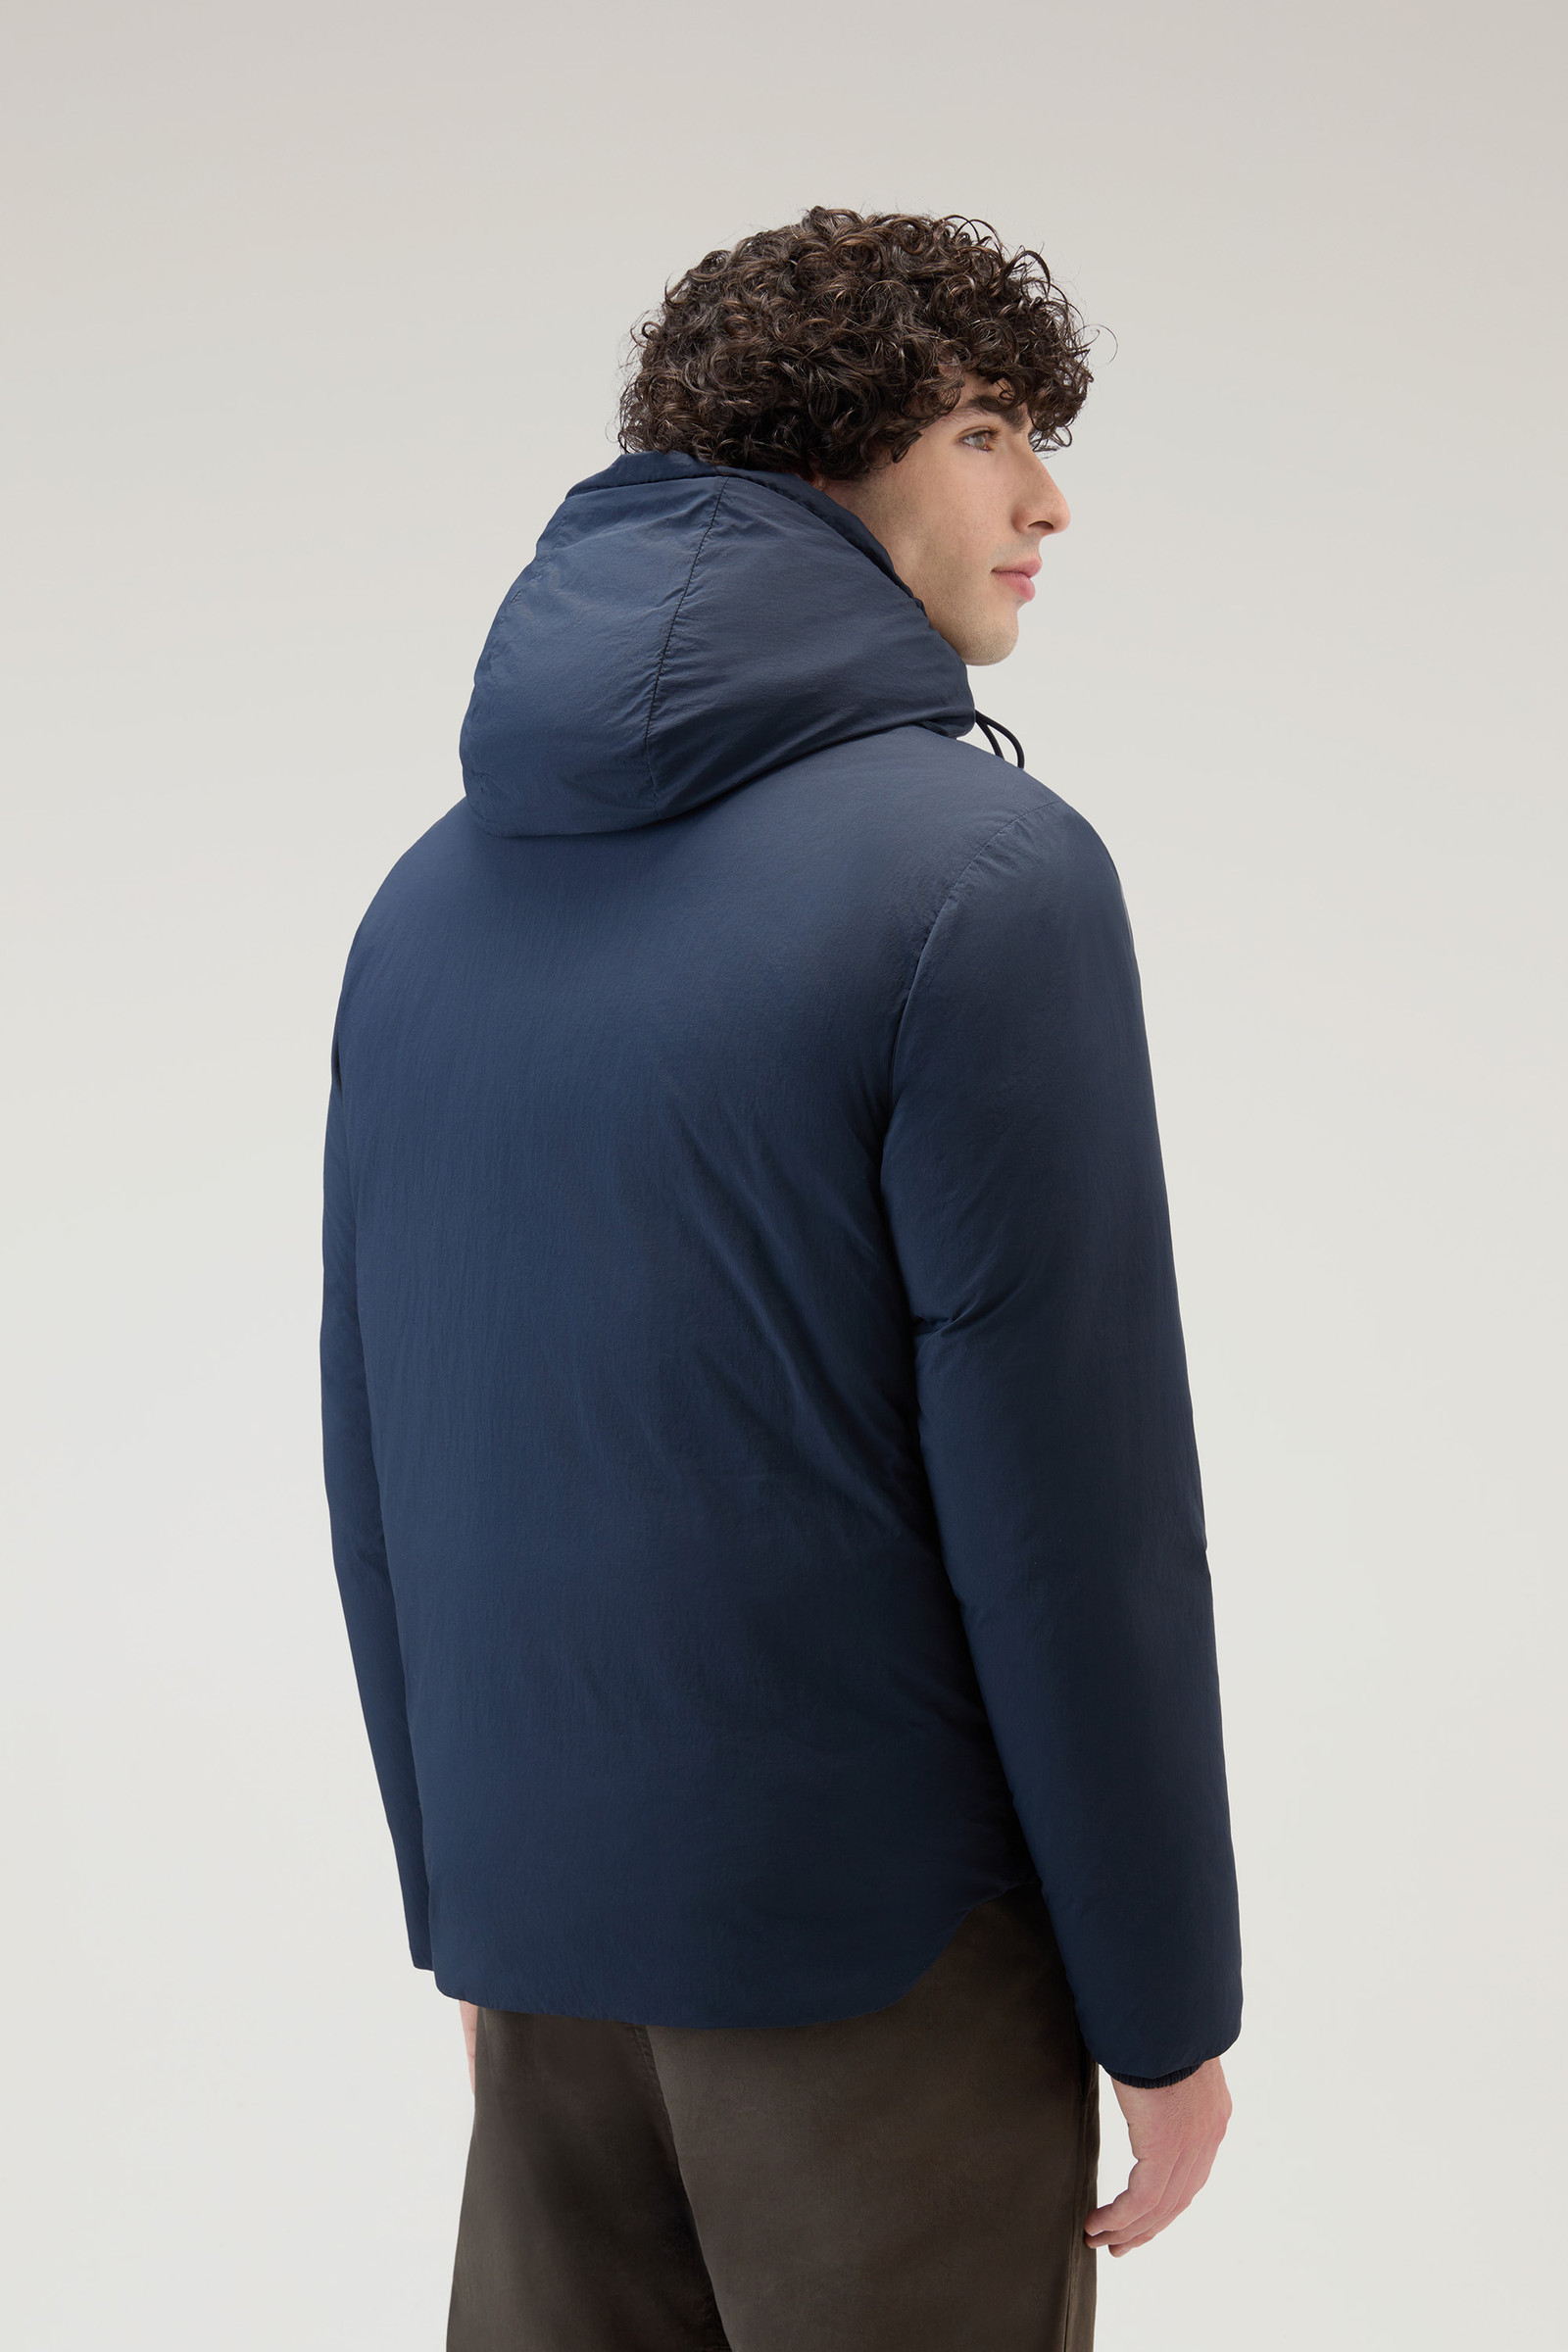 Aleutian Jacket in Taslan Nylon Blue | Woolrich USA